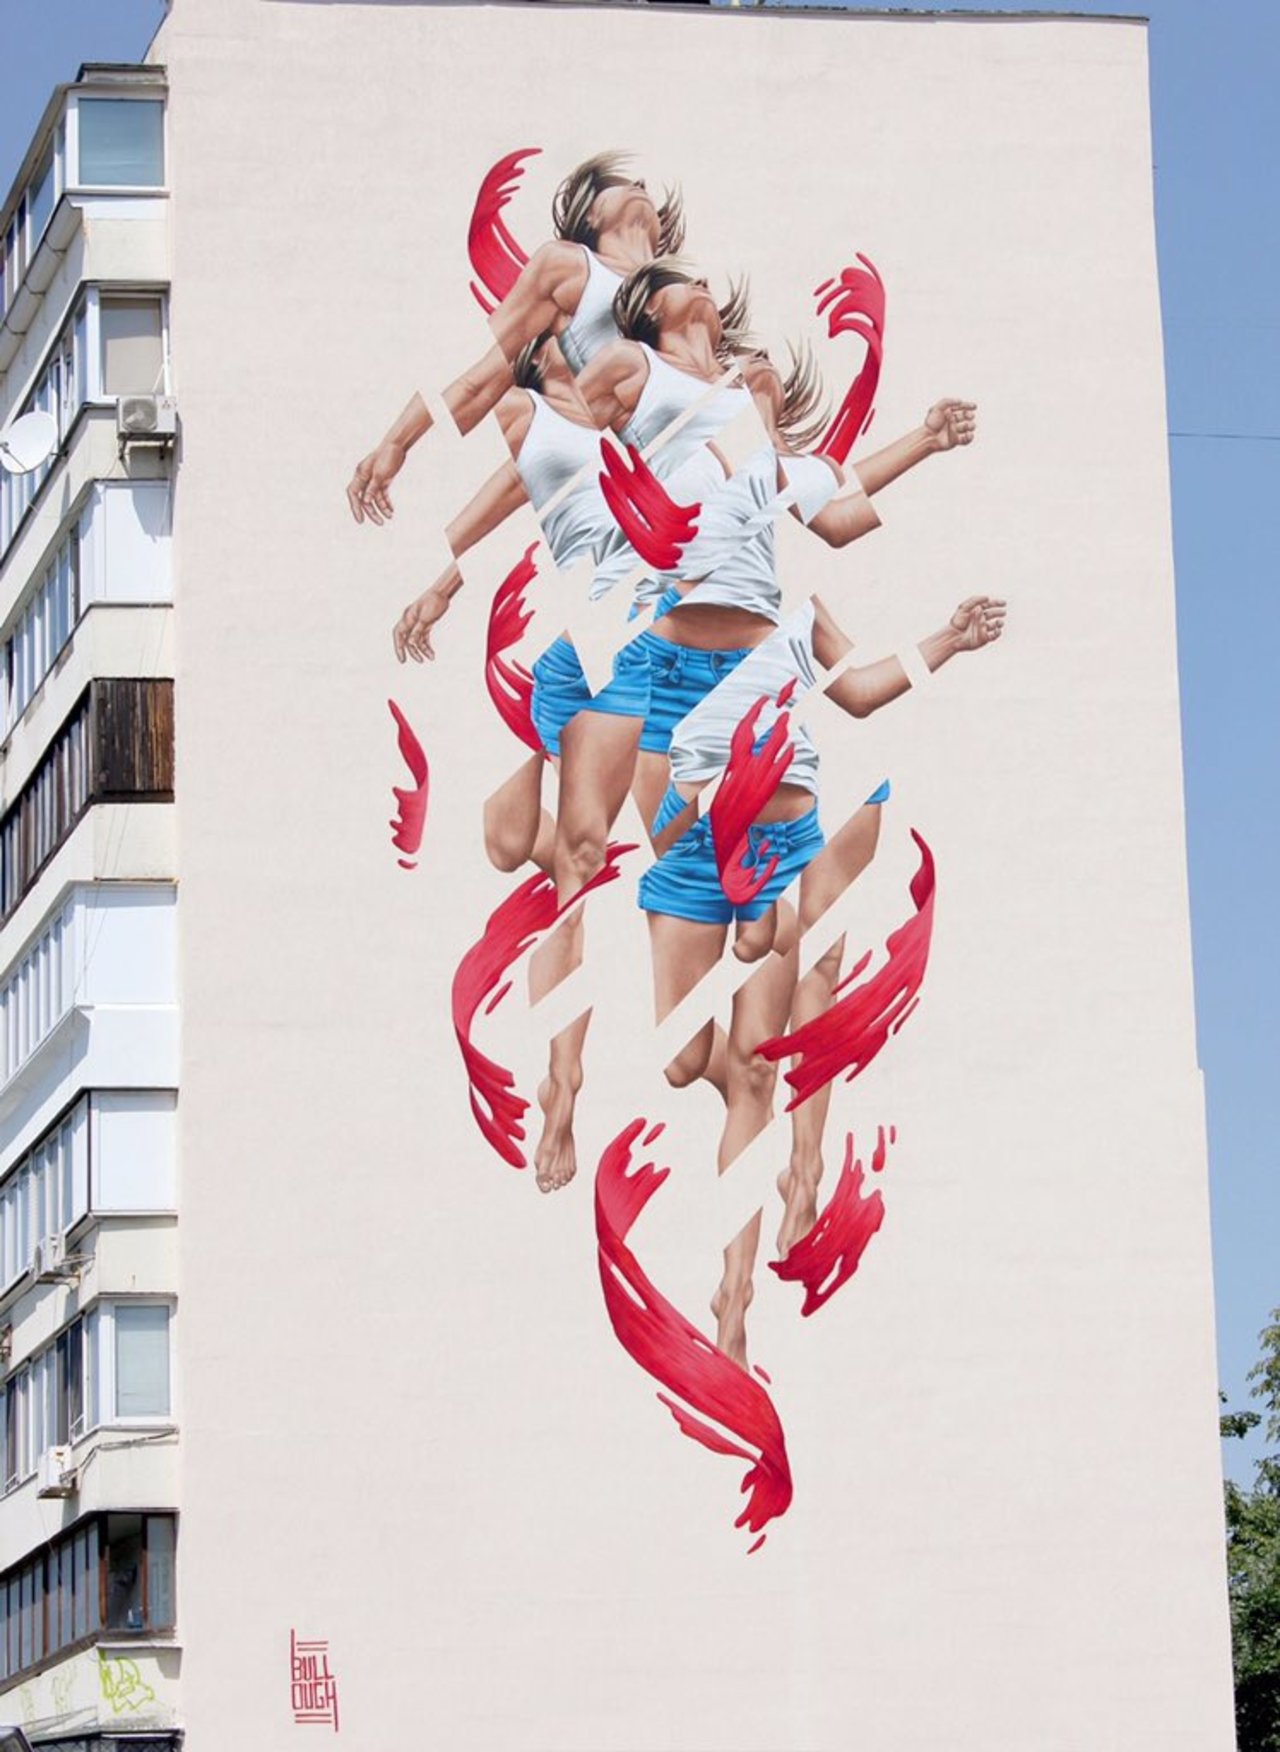 Mural James Bullough #Kiev #Ukraine #streetart #urbanart #mural #graffiti #art https://t.co/VyPiqAHDVm